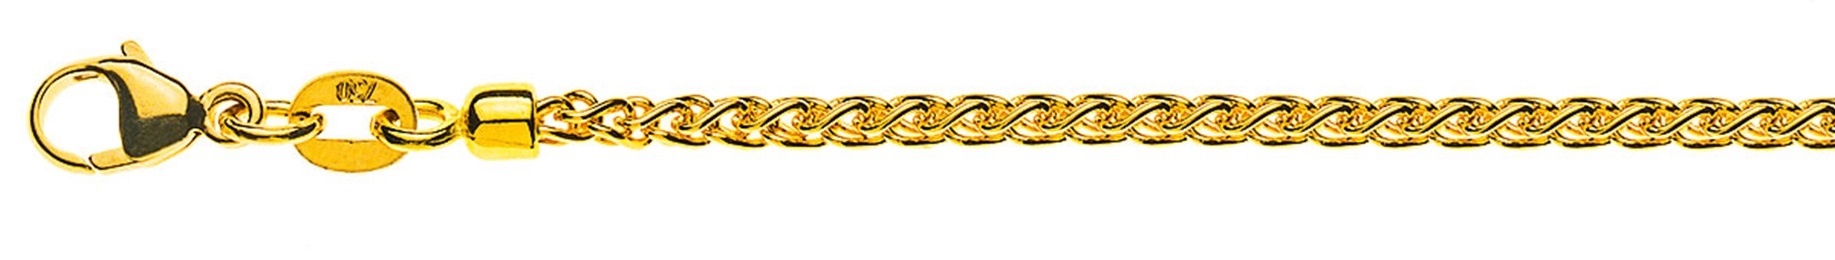 AURONOS Prestige Halskette Gelbgold 18K Zopfkette 40cm 2.15mm